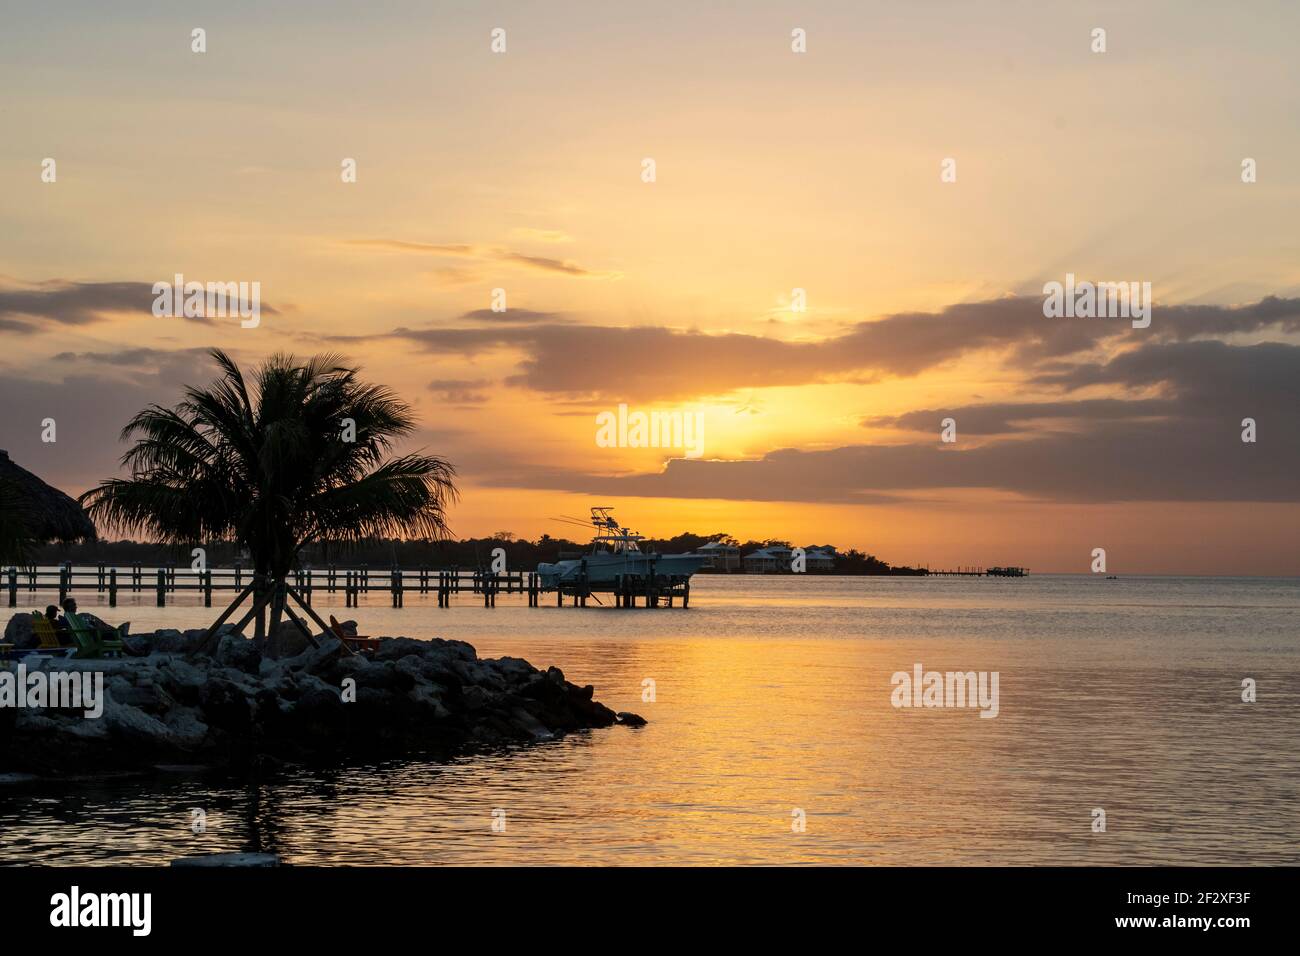 Florida Keys Sunset: Viaggia verso il Golfo del Messico lungo la costa della Florida, goditi la tranquillità o questa popolare destinazione turistica sulla spiaggia Foto Stock